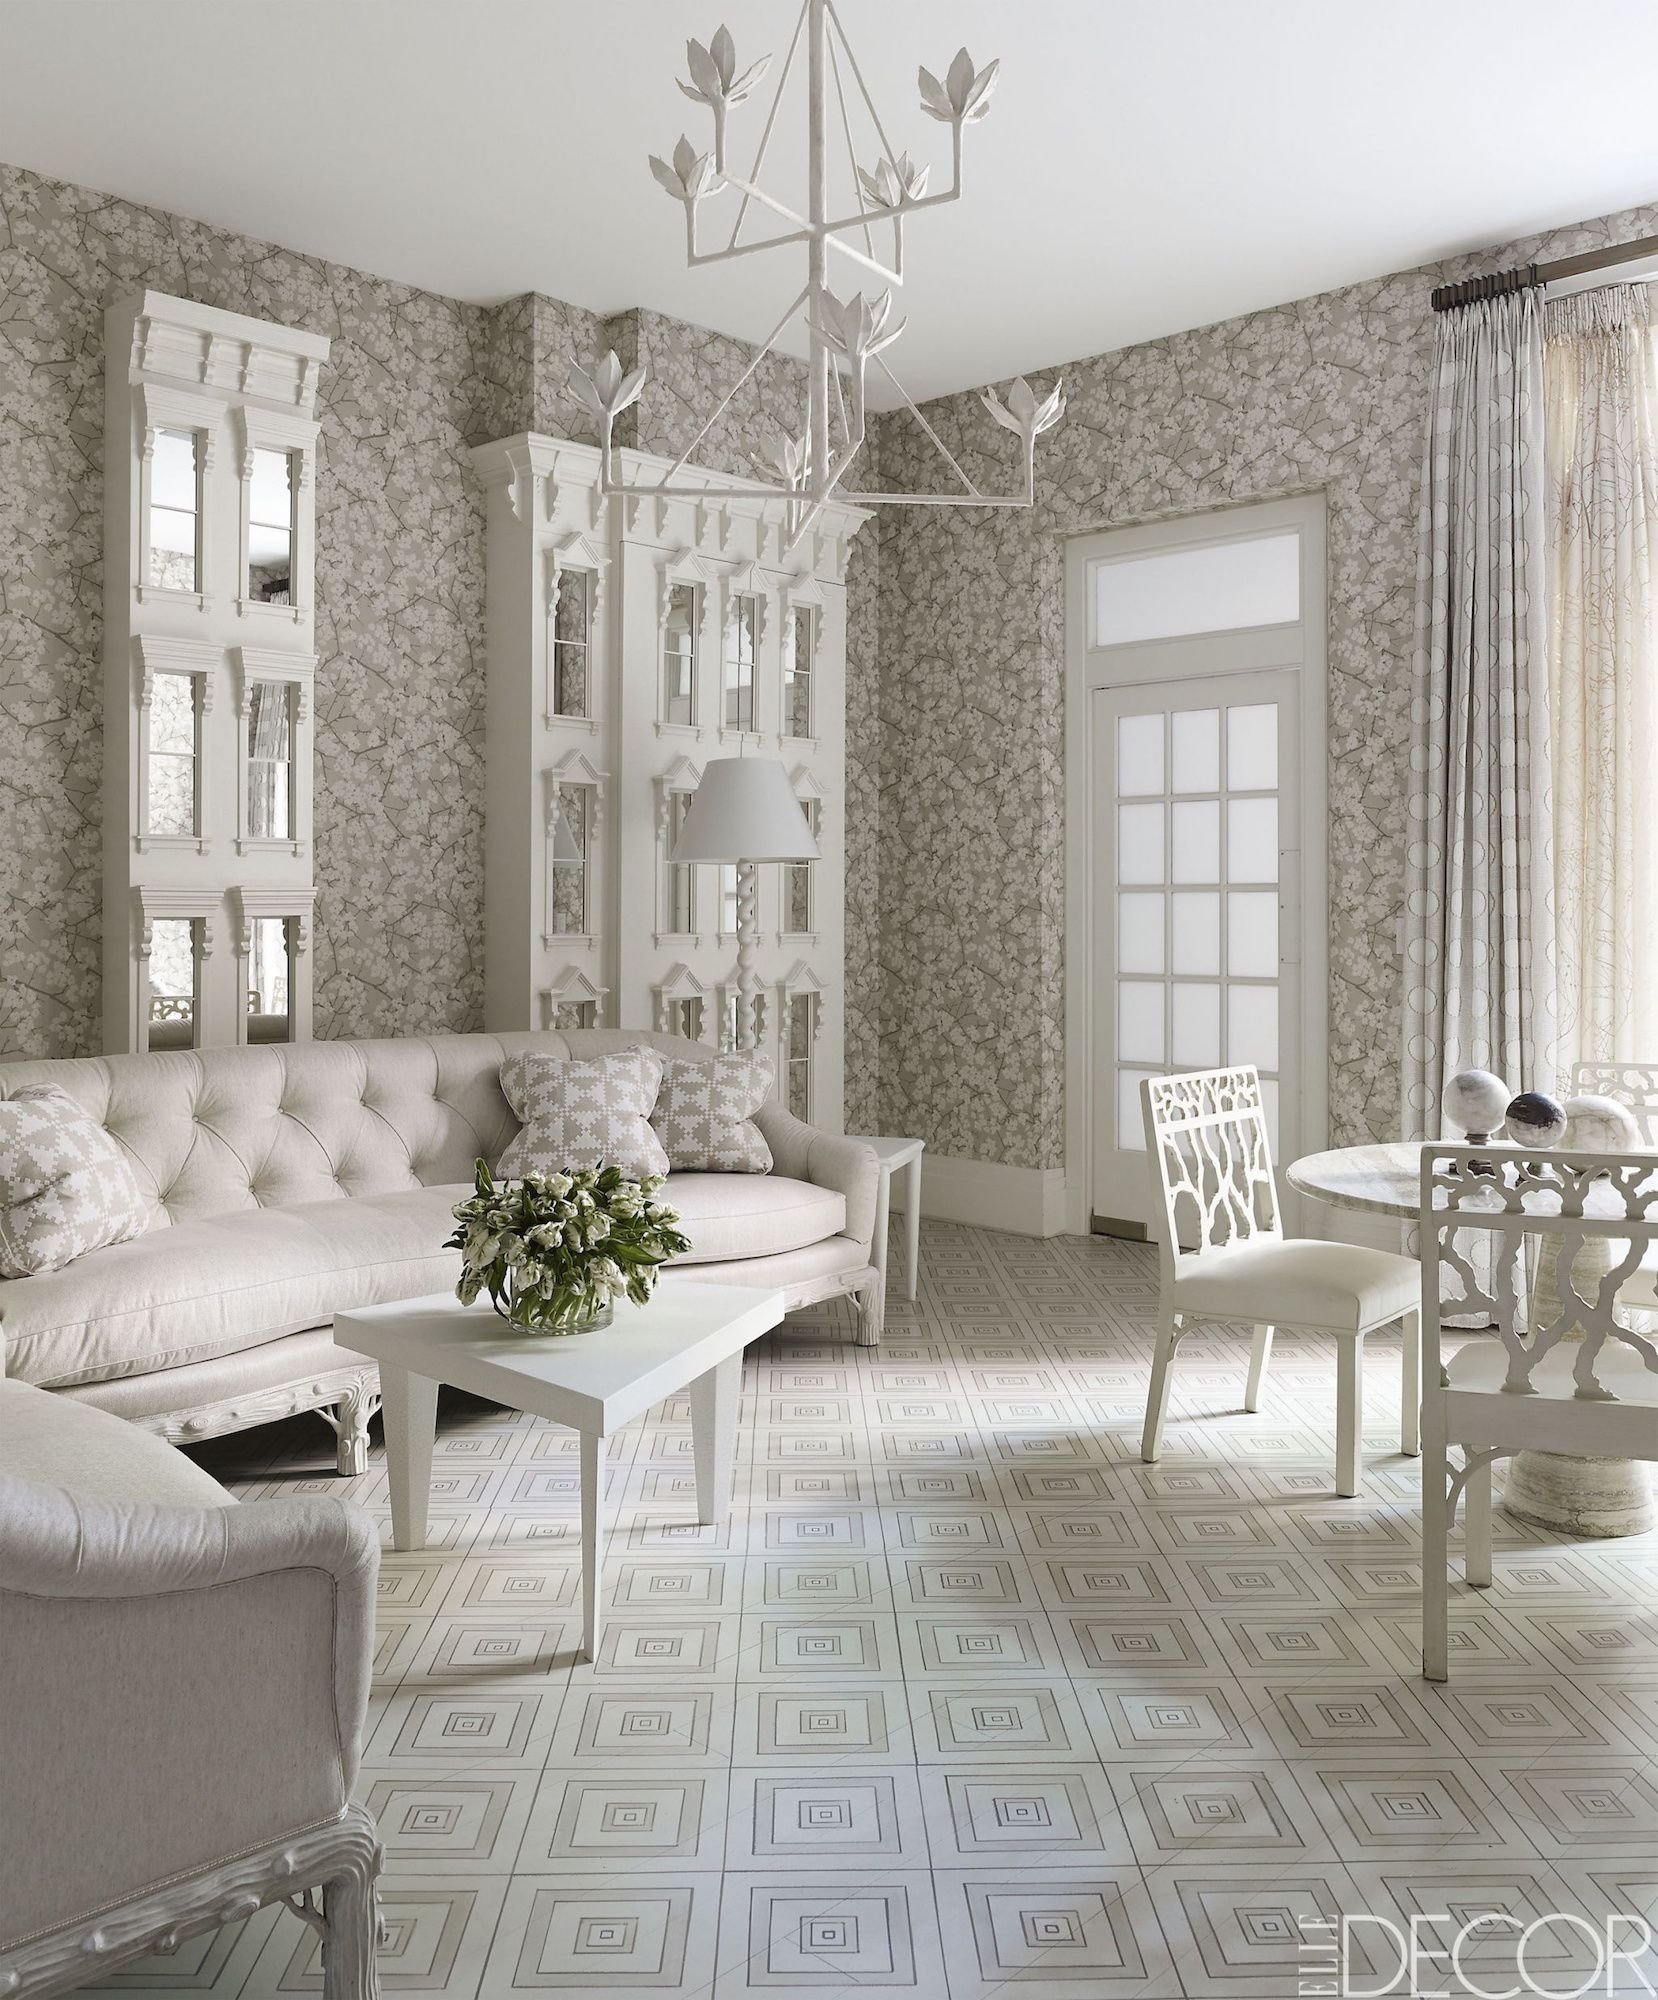 10 Lovely Curtain Ideas For Living Room 40 living room curtains ideas window drapes for living rooms 10 2022